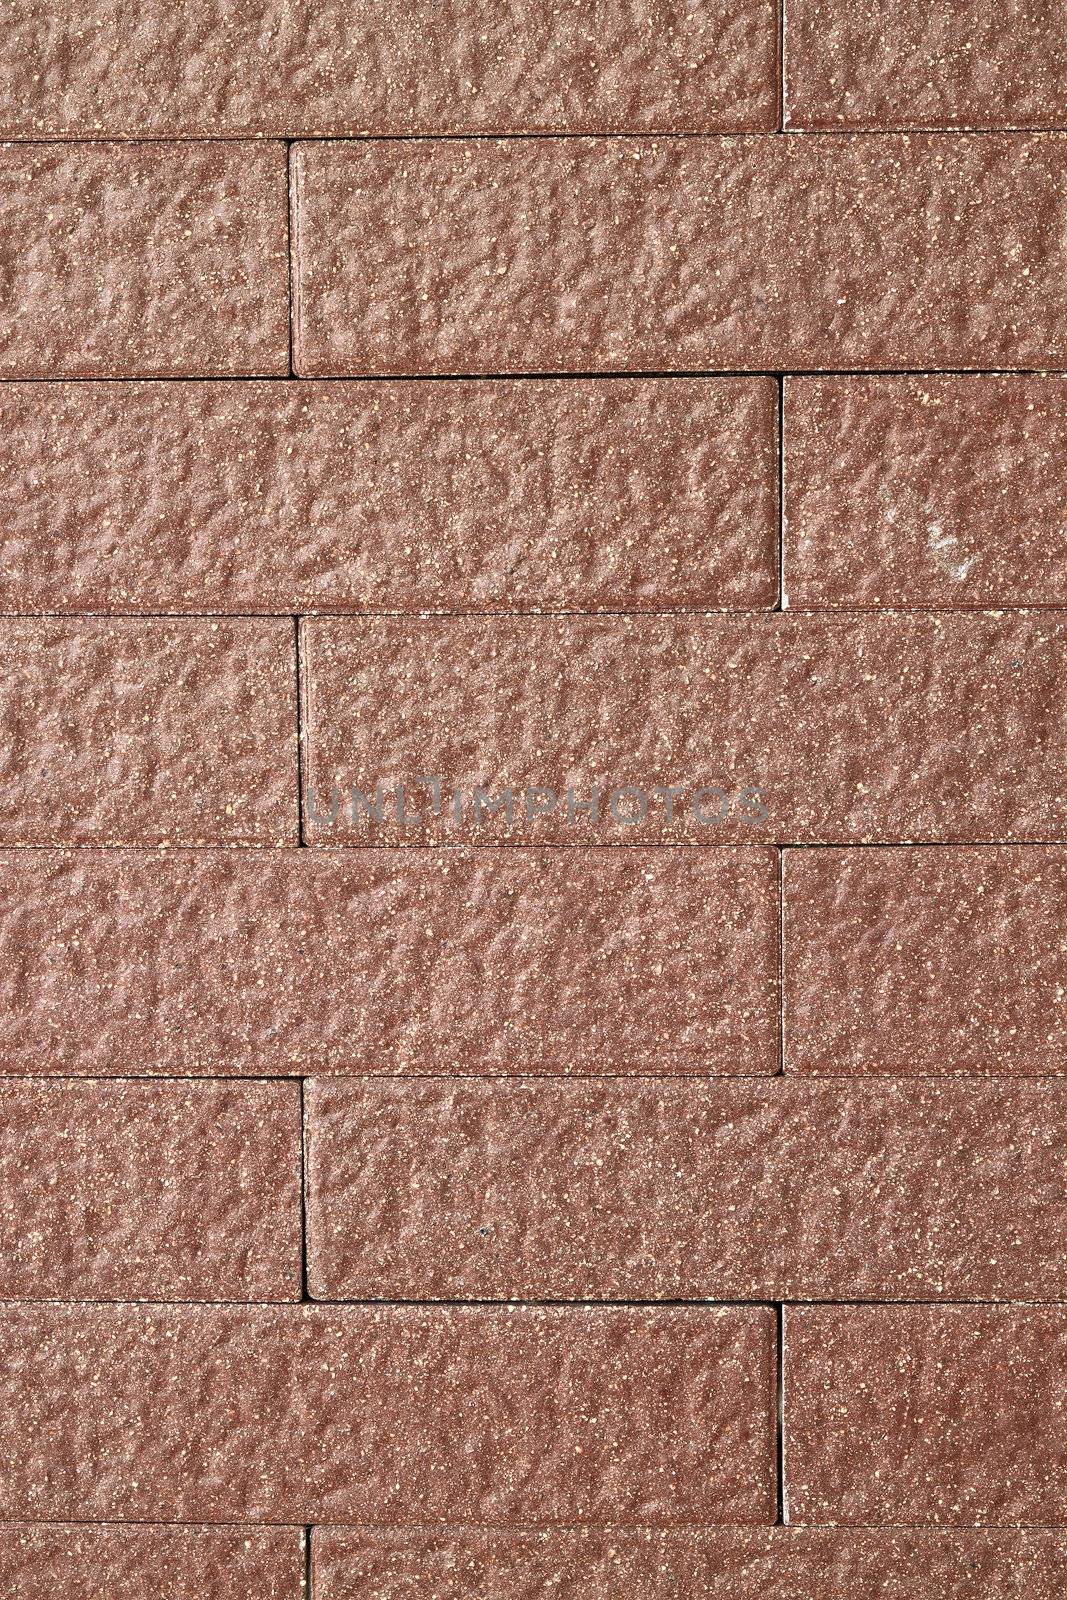 Brick wall by geargodz